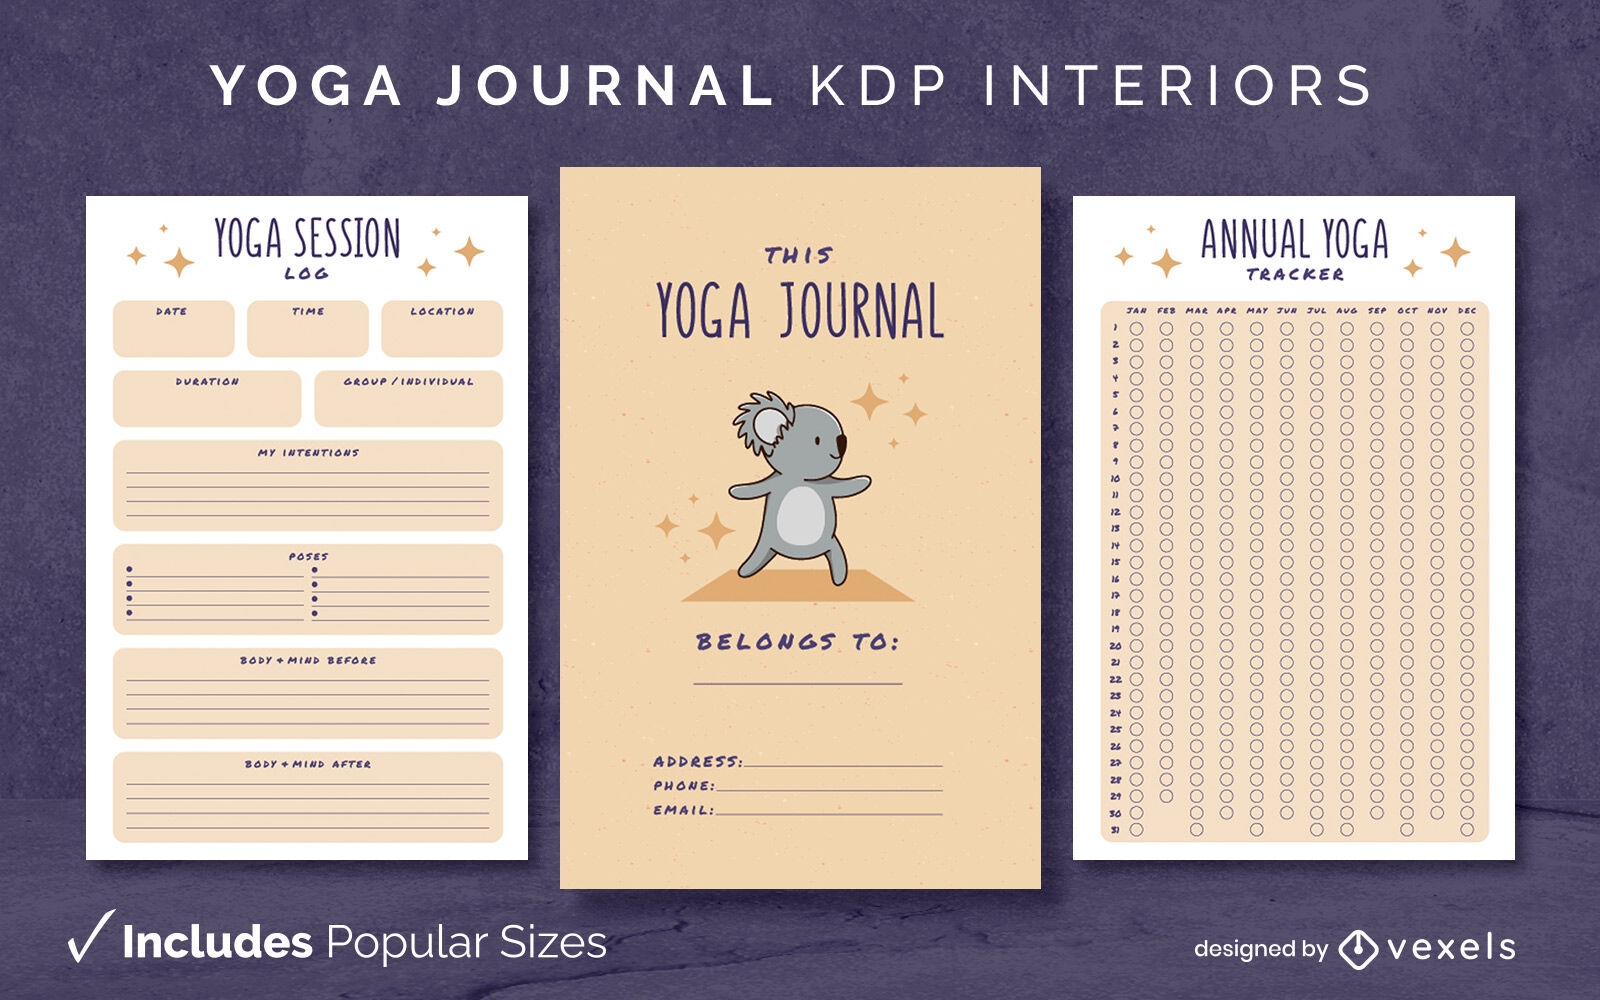 Plantilla de diario de yoga Koala Dise?o de interiores KDP